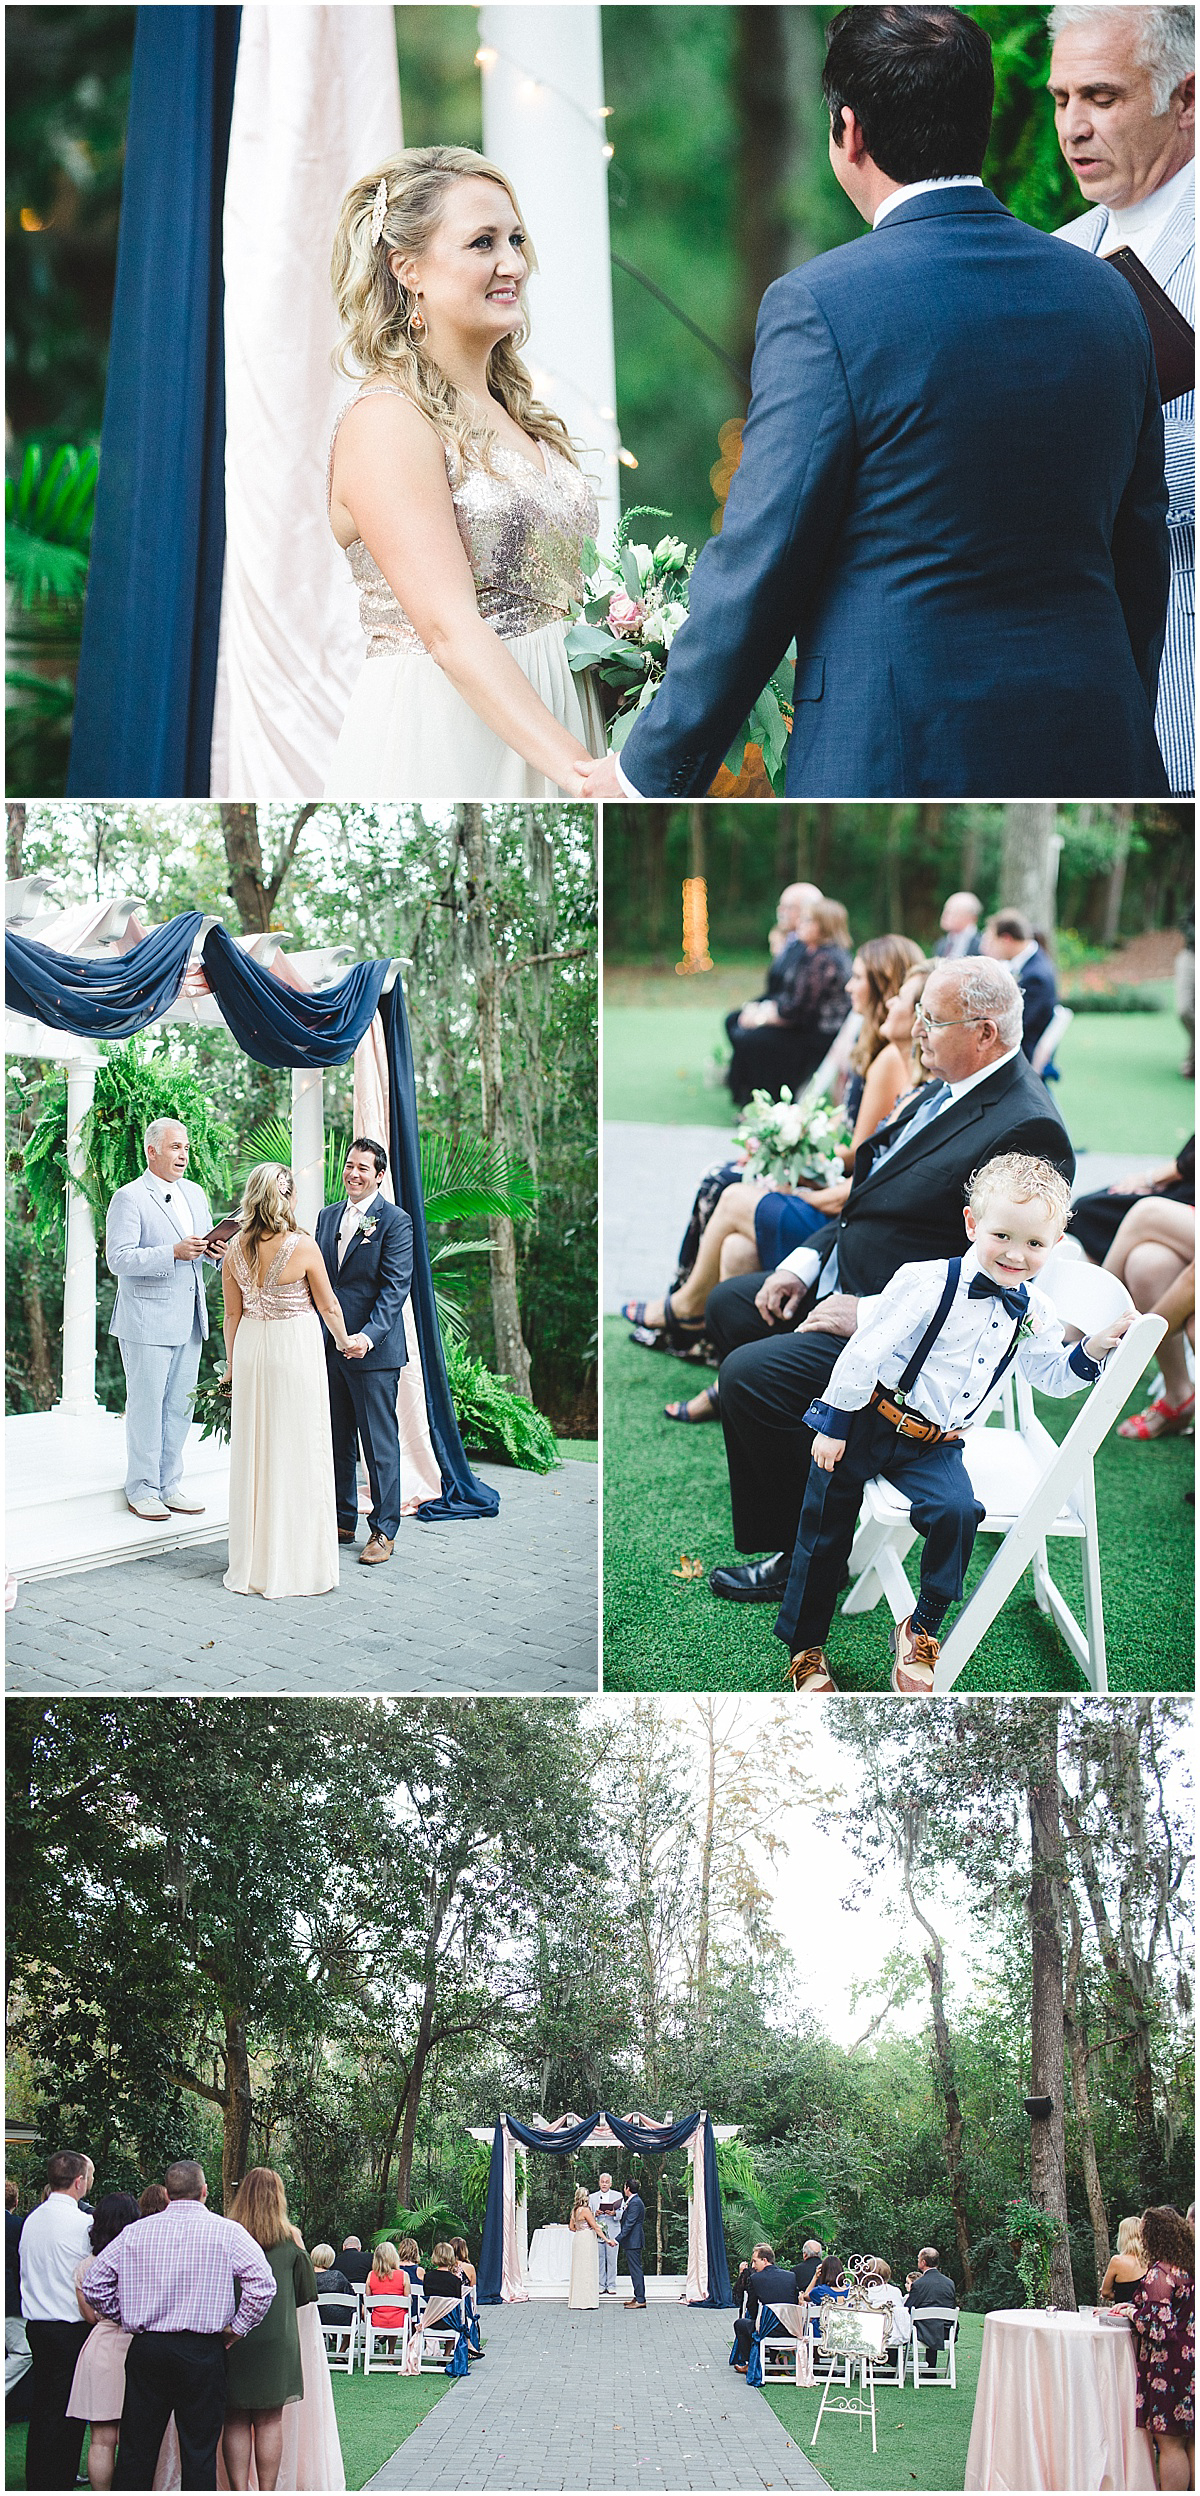 Mackey house wedding - blush & navy wedding